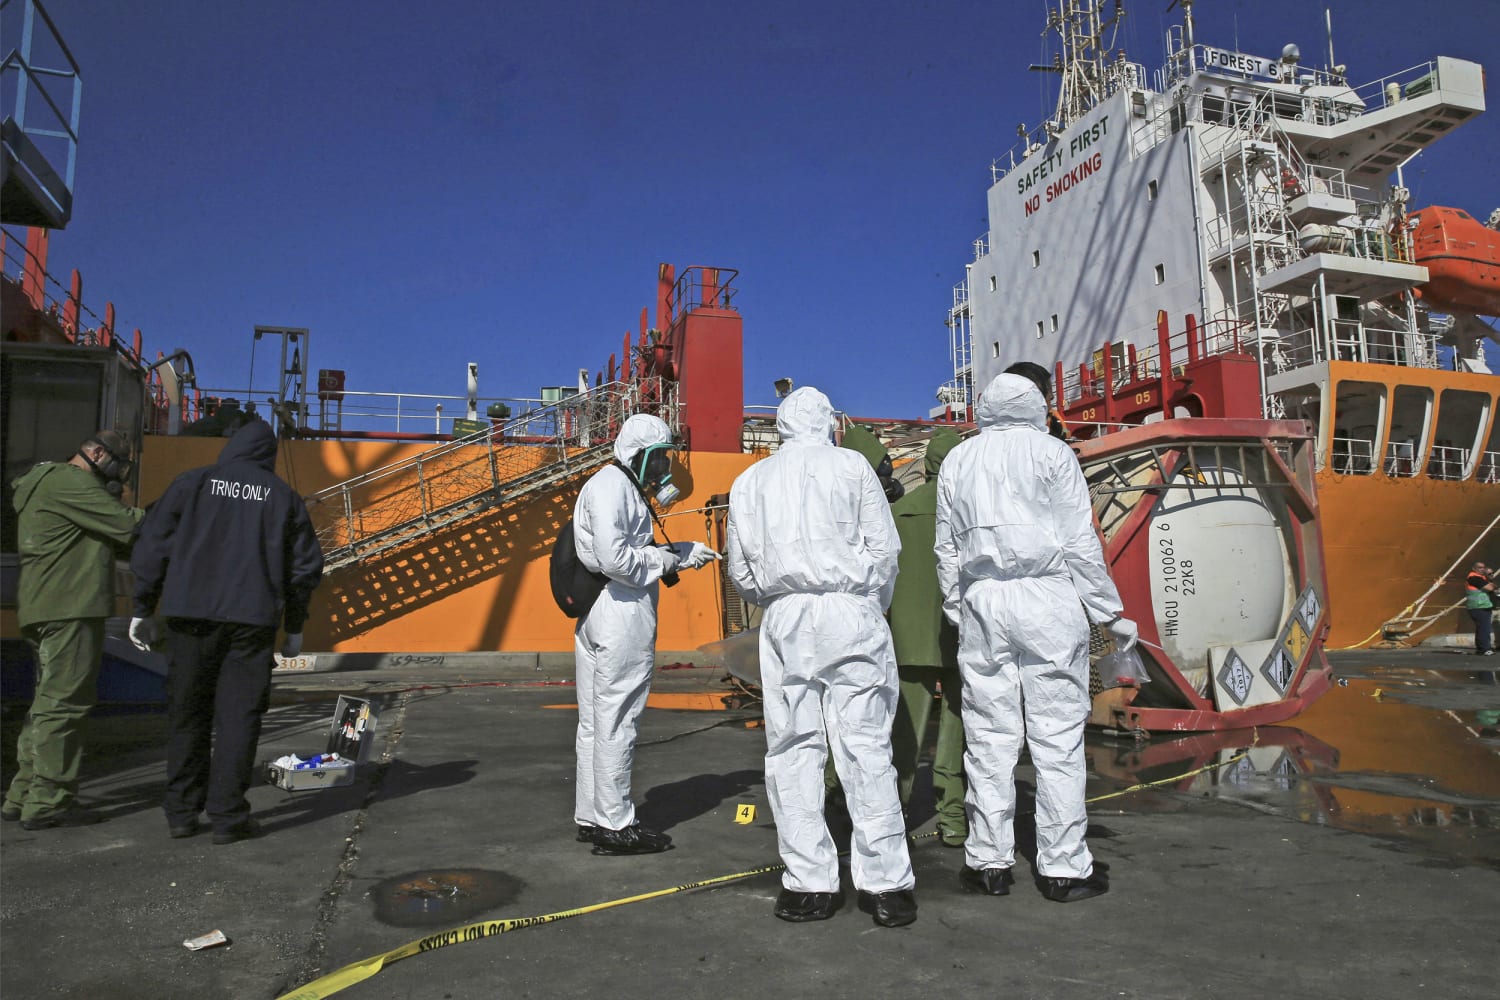 Chlorine gas leak at least 12, injures 251 at Jordan port